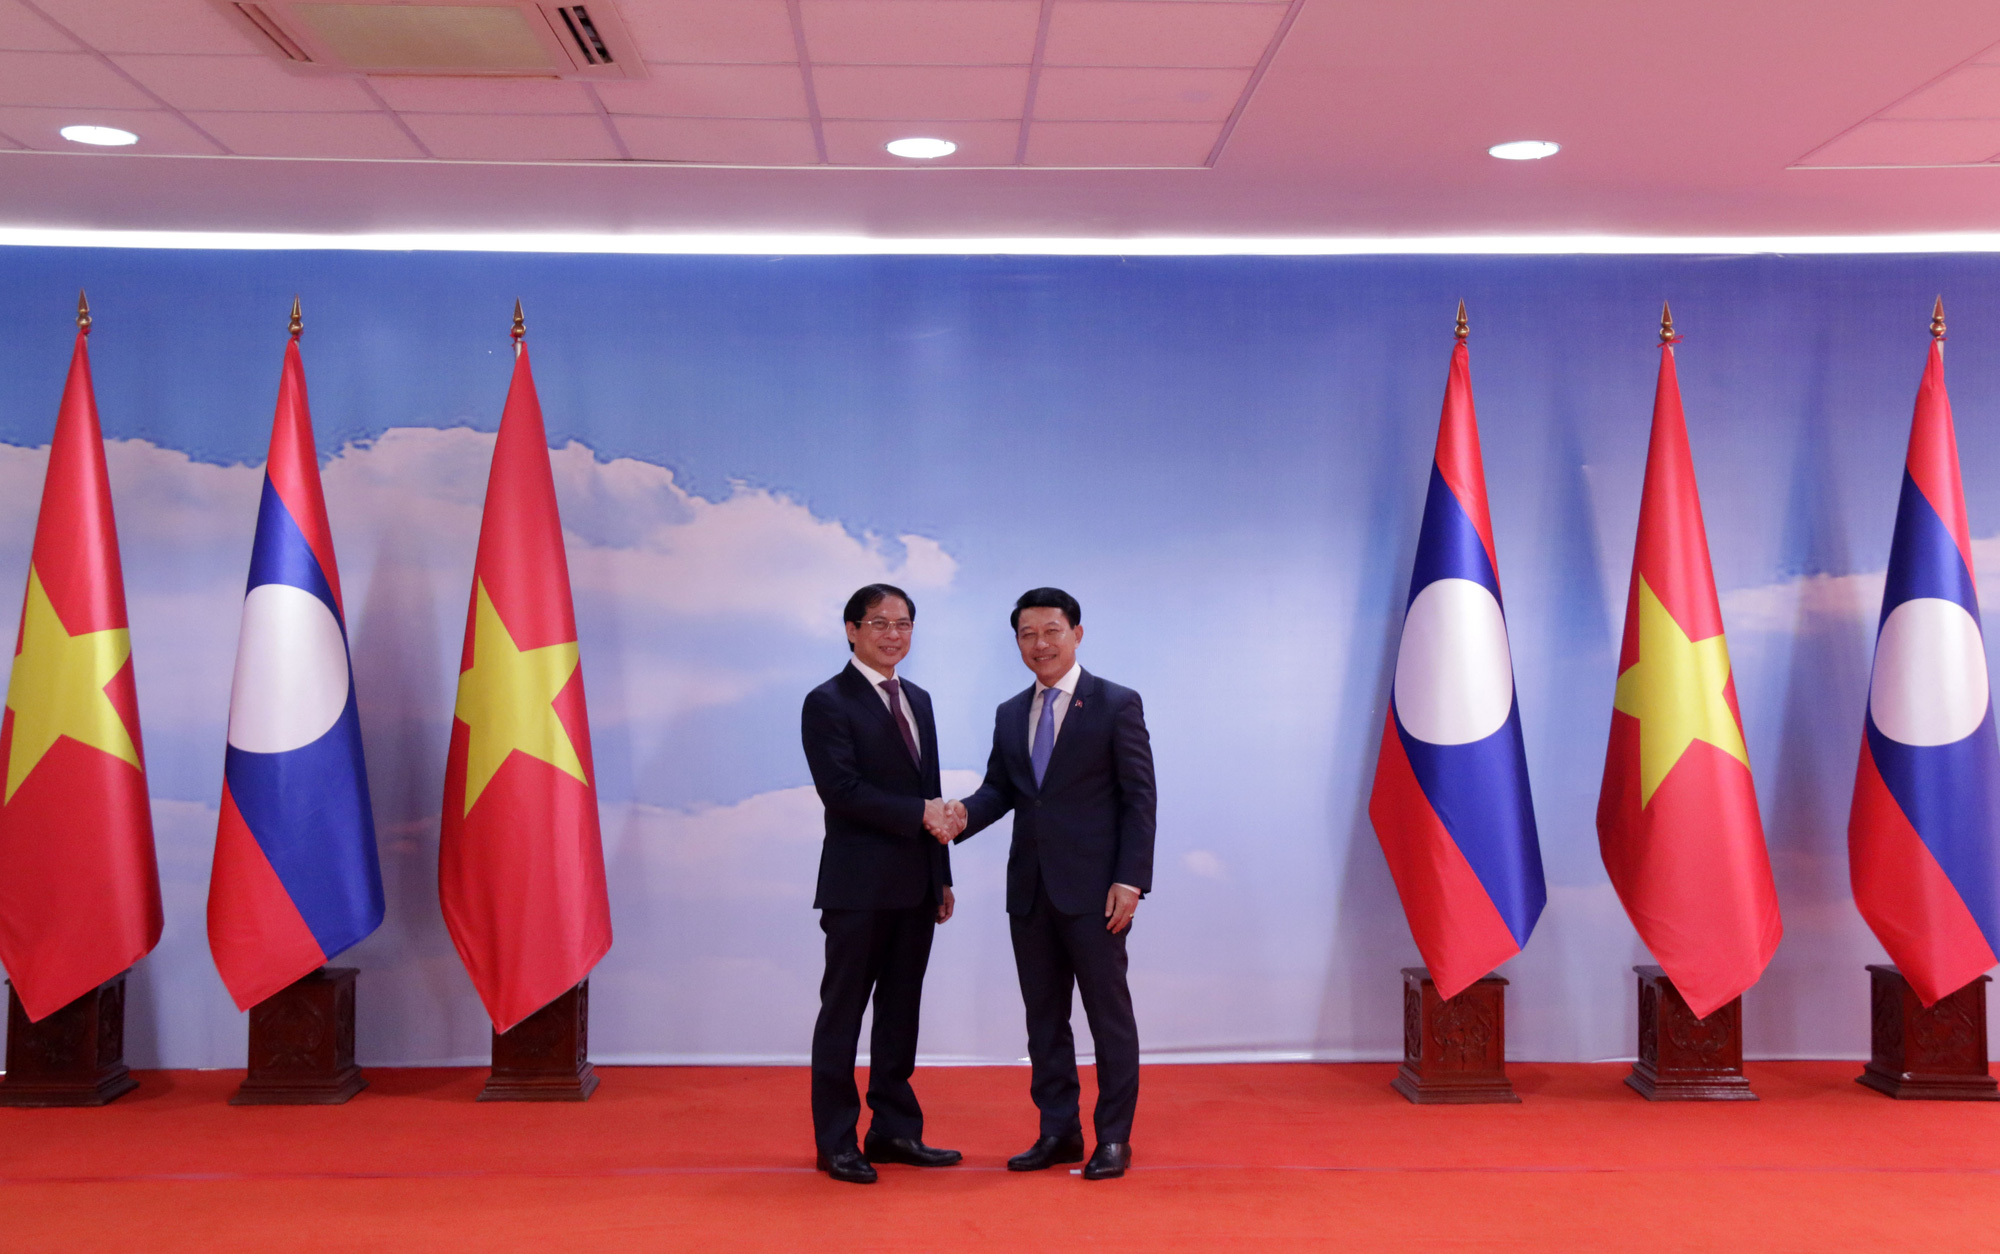 Hợp tác kinh tế: Hiểu được tầm quan trọng của hợp tác kinh tế, Việt Nam đã nỗ lực hơn nữa để tăng cường quan hệ với các đối tác trên thế giới. Chúng ta đang phát triển các khu công nghiệp, khu kinh tế đặc biệt và cực kỳ chú trọng đến các dự án quốc tế. Những nỗ lực ấy đang mang lại những thành công rực rỡ, giúp Việt Nam hiện đang là một trong những quốc gia có tốc độ tăng trưởng kinh tế cao nhất Châu Á.